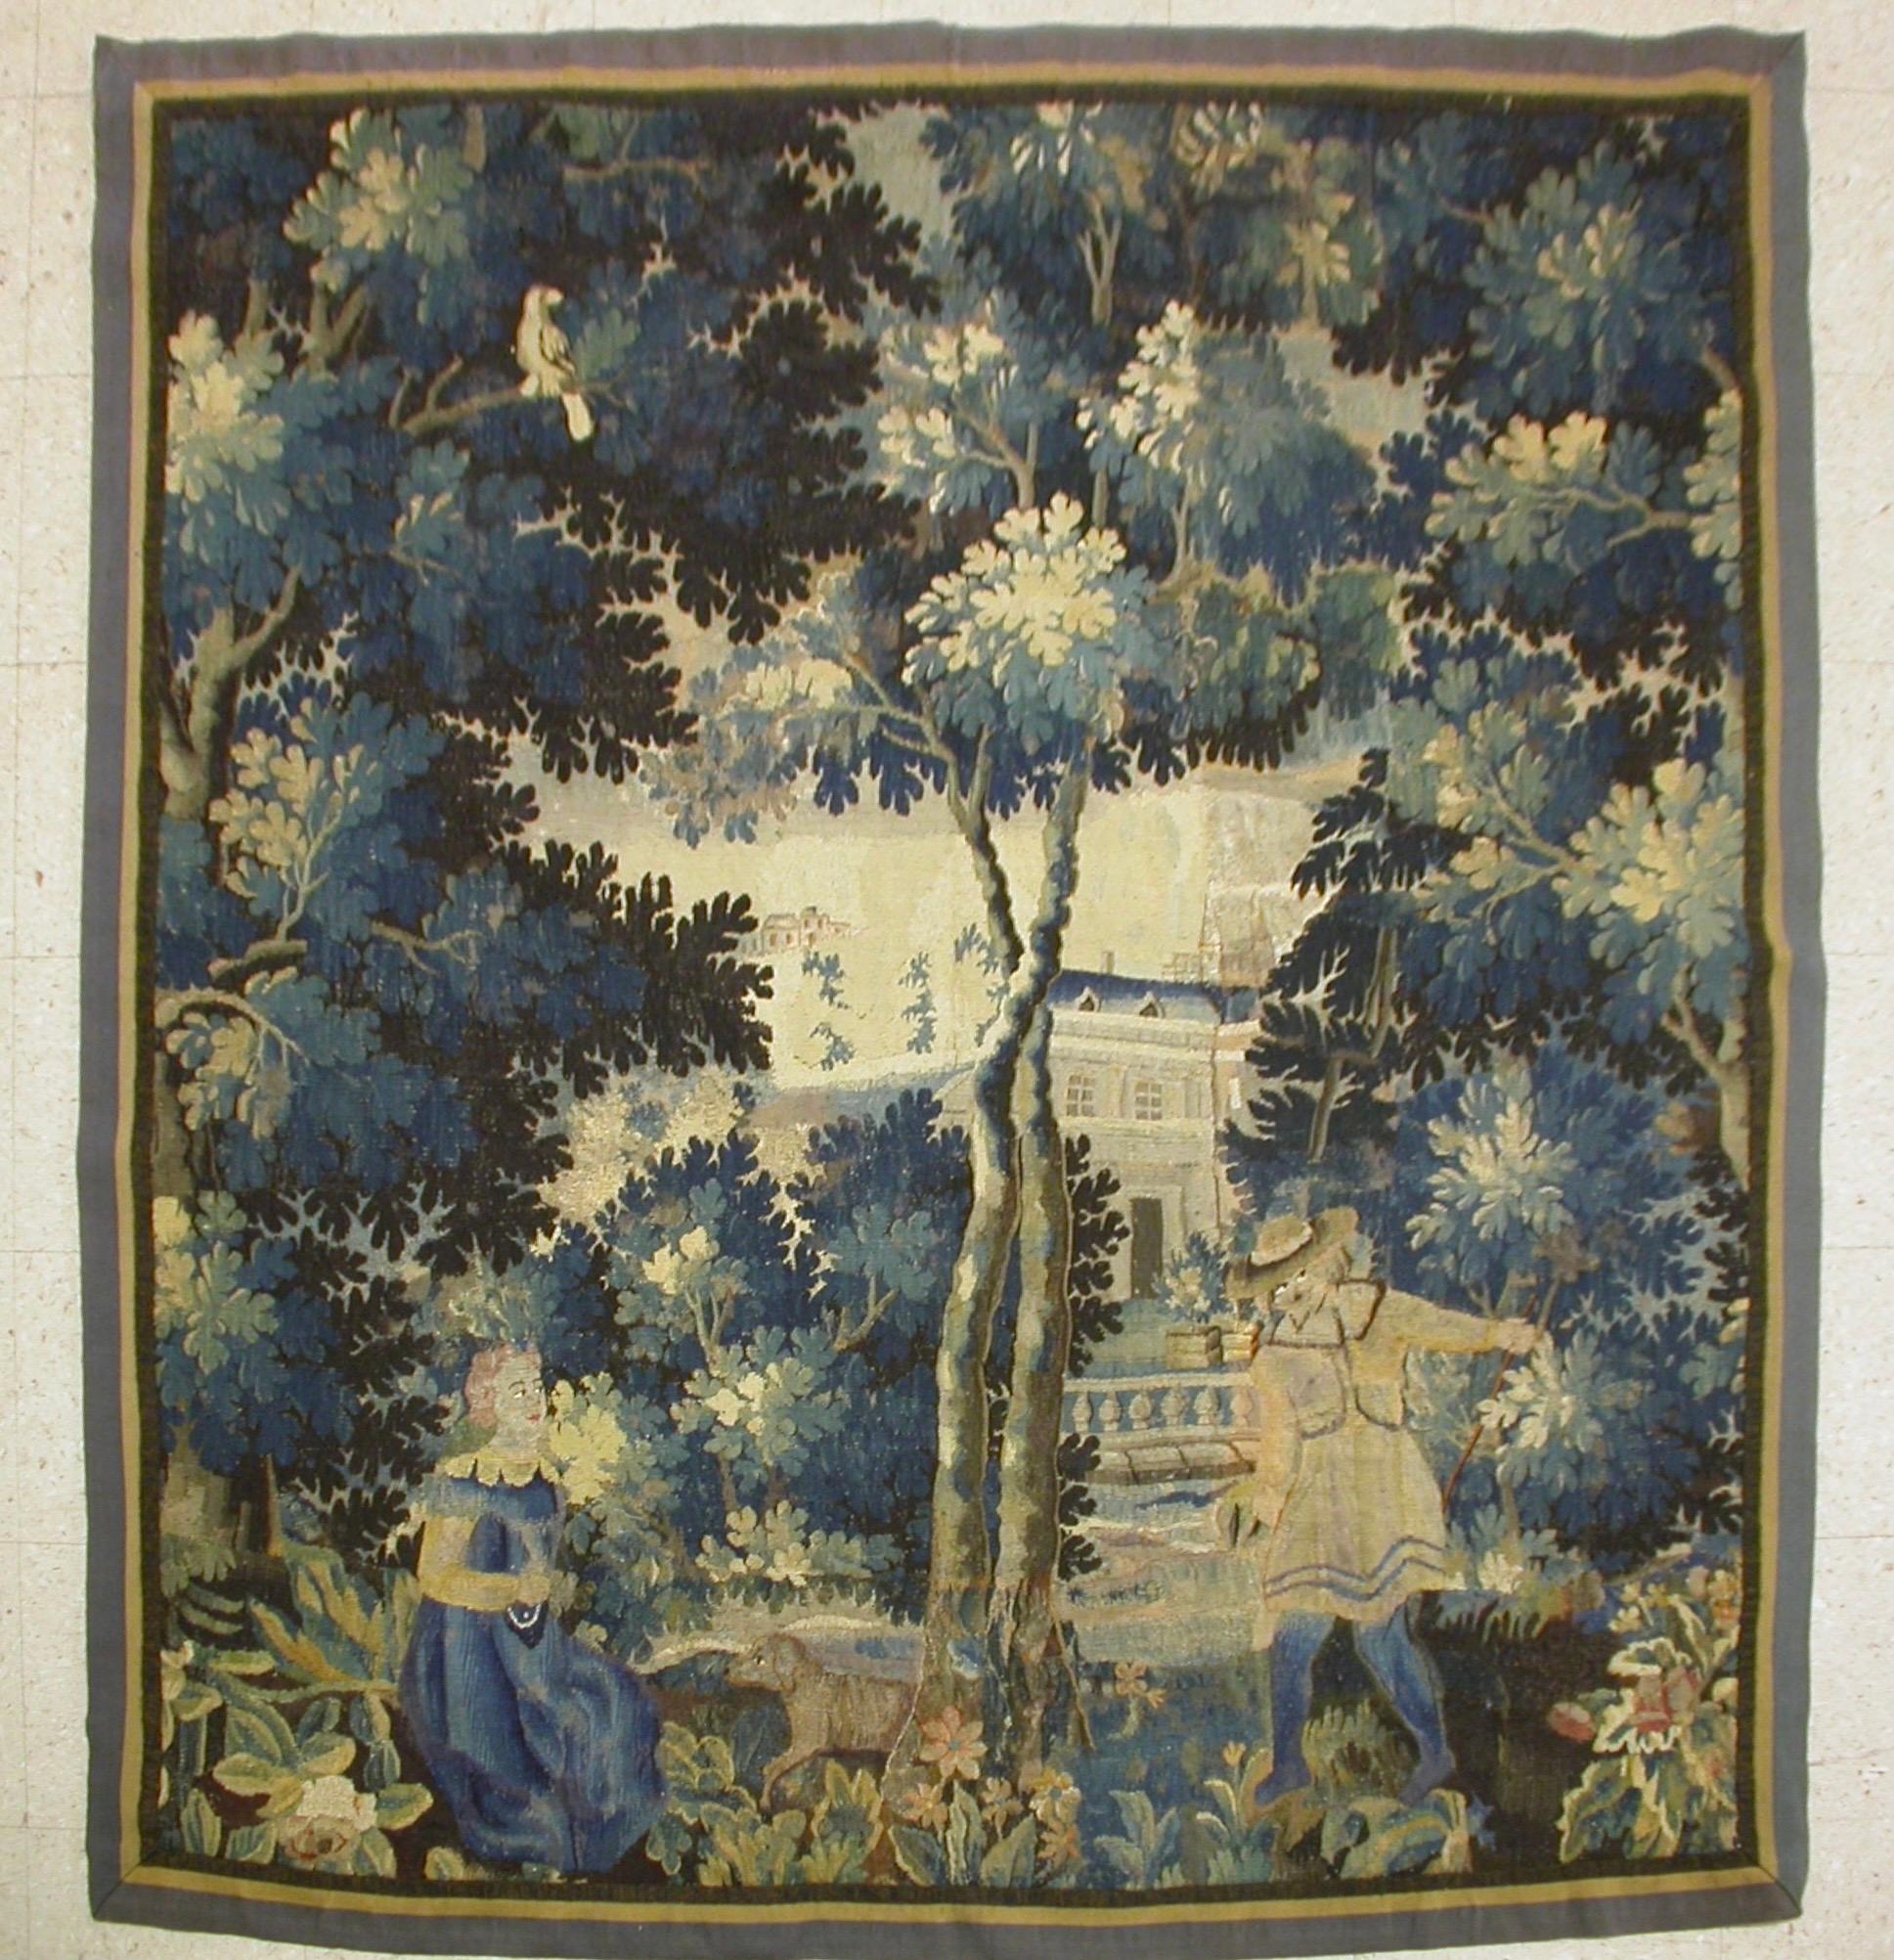 Il s'agit d'une magnifique tapisserie de paysage de Verdure flamande carrée du 17ème siècle avec deux légères figures dans une belle et riche scène d'été d'une campagne avec des arbres et une végétation luxuriante et des maisons au loin. 

La pièce